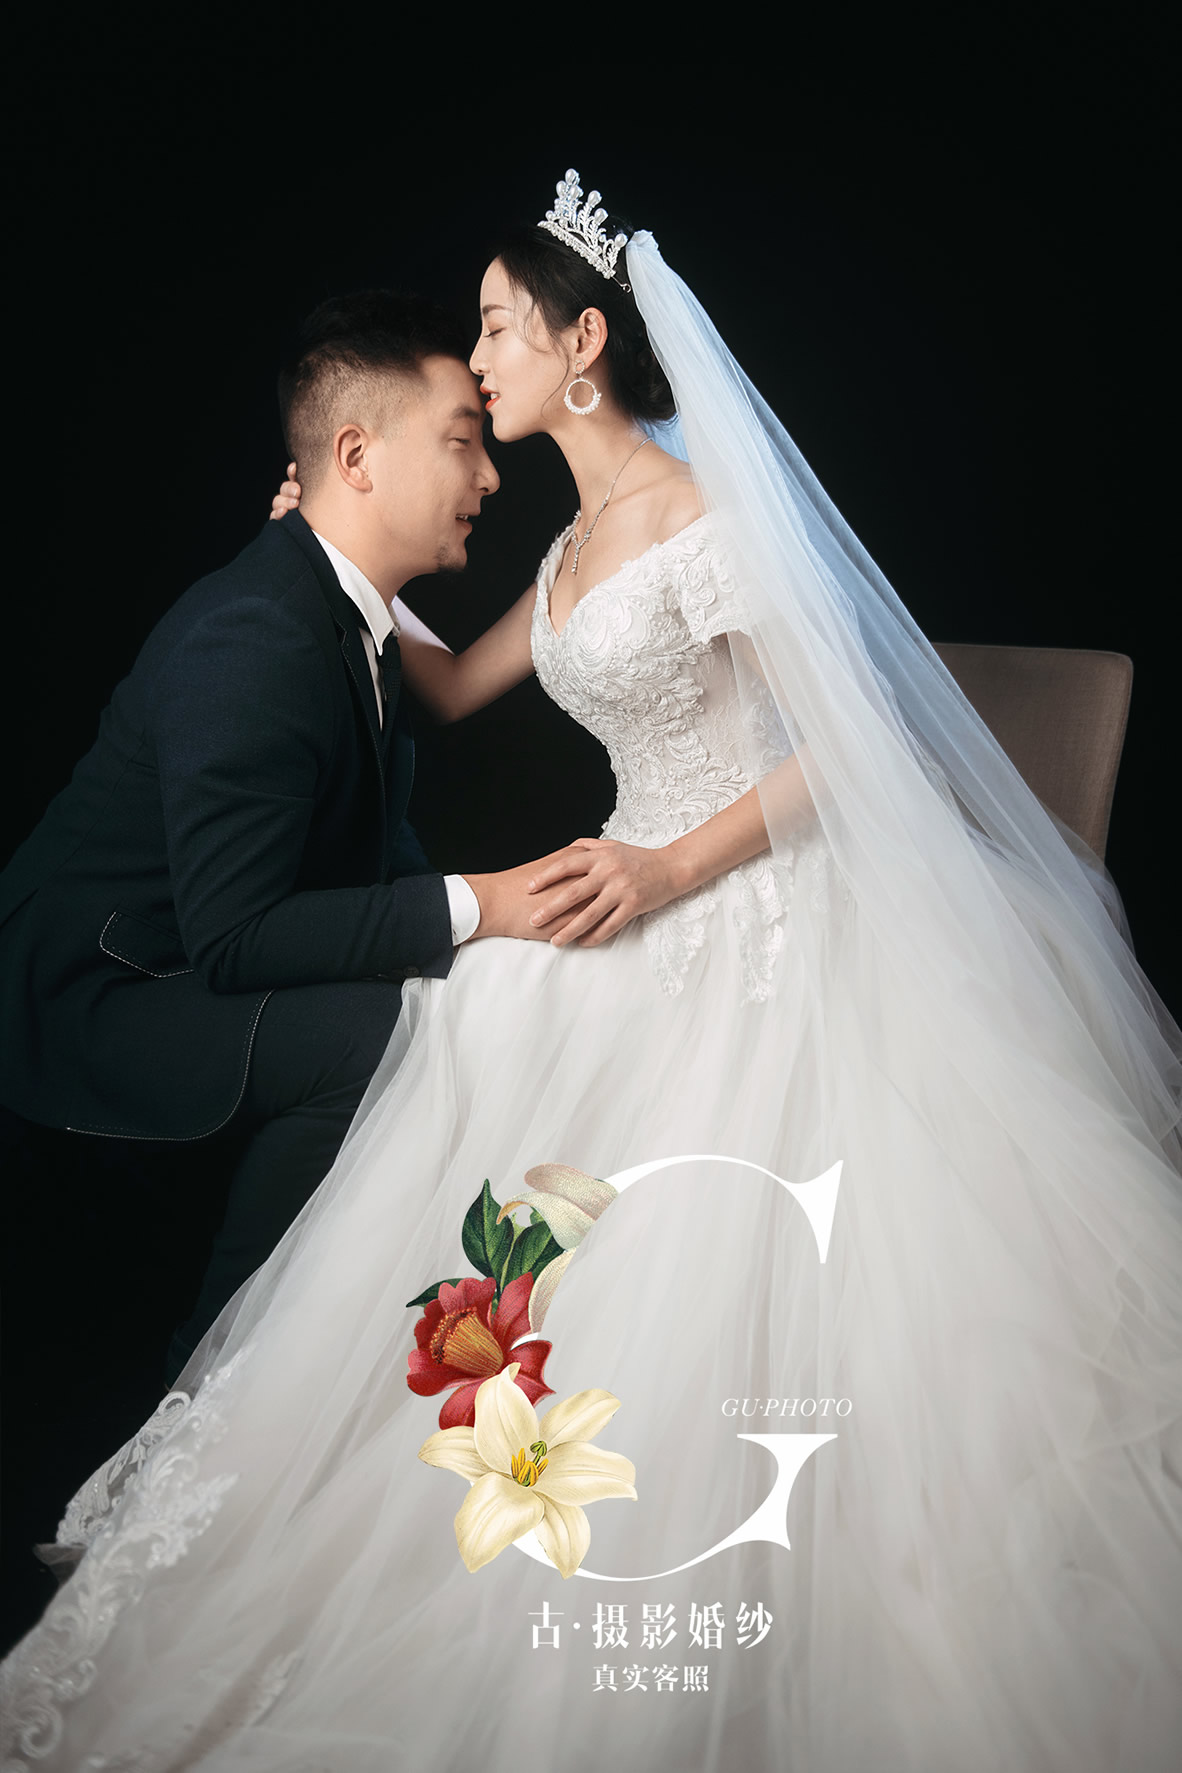 巫先生 陈小姐 - 每日客照 - 古摄影婚纱艺术-古摄影成都婚纱摄影艺术摄影网